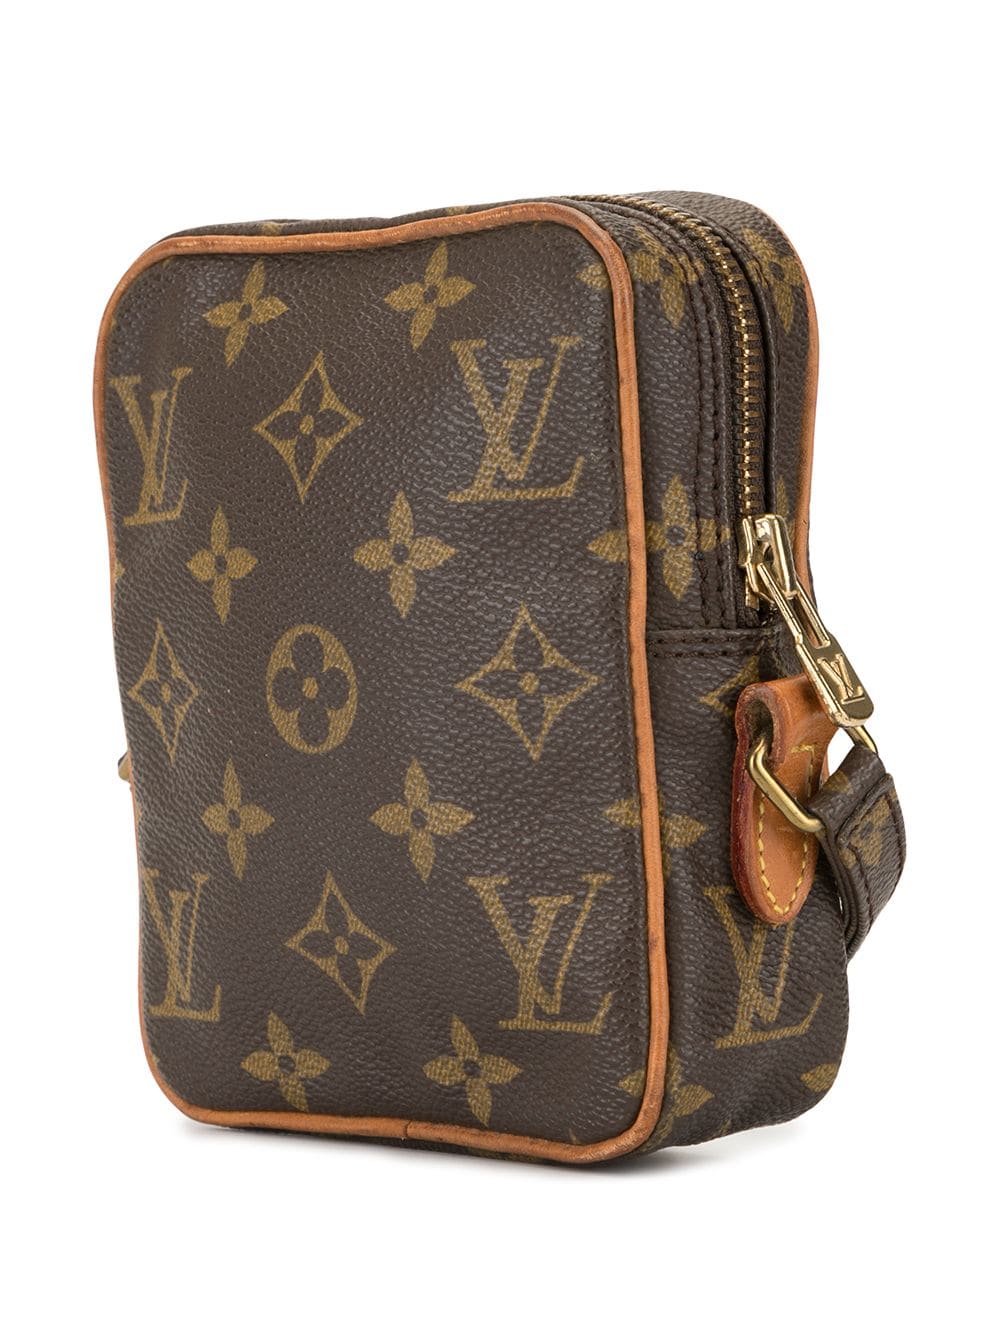 LOUIS VUITTON LV Mini Danube Shoulder Bag Monogram Leather Brown